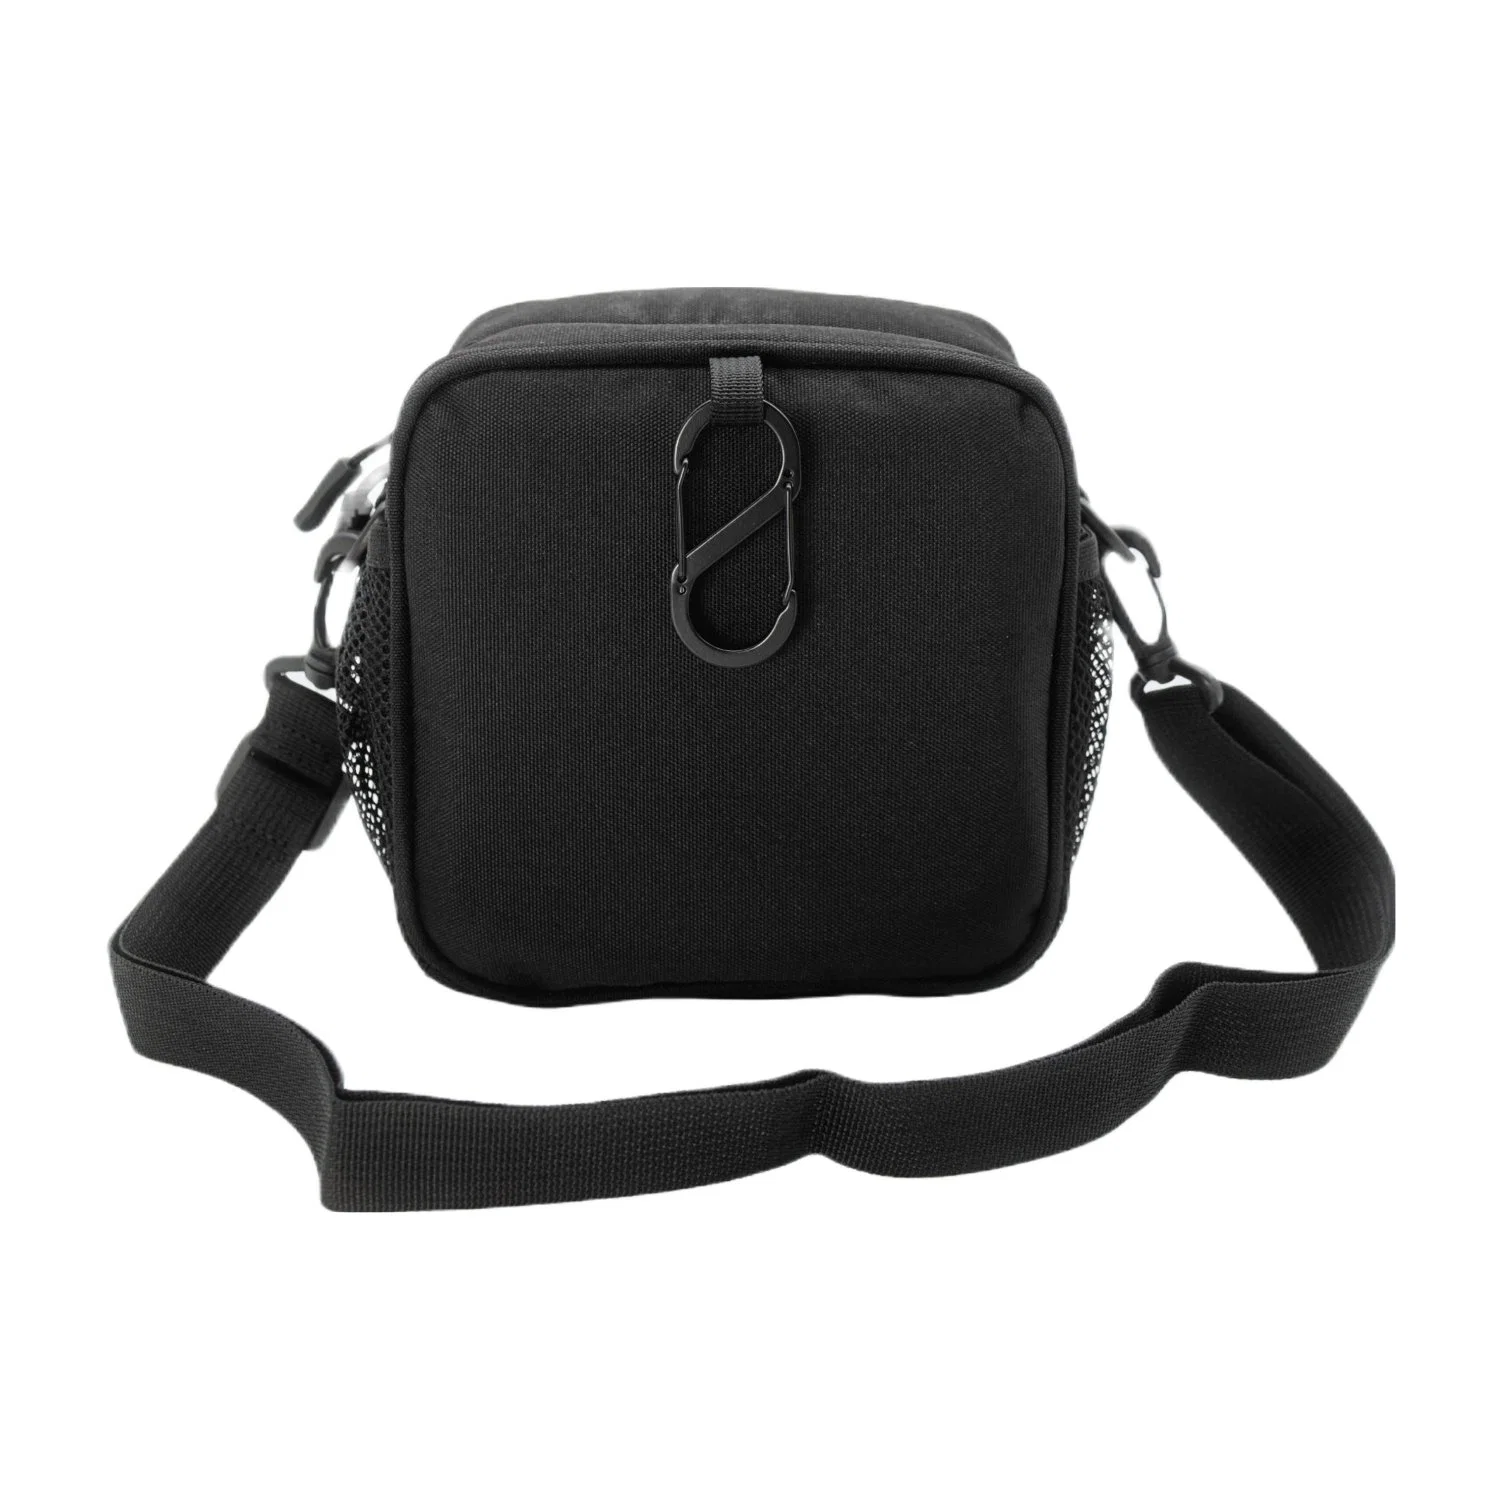 Leisure Bag Shoulder Bag Sports Bag, Cooler Bag on The Golf Course